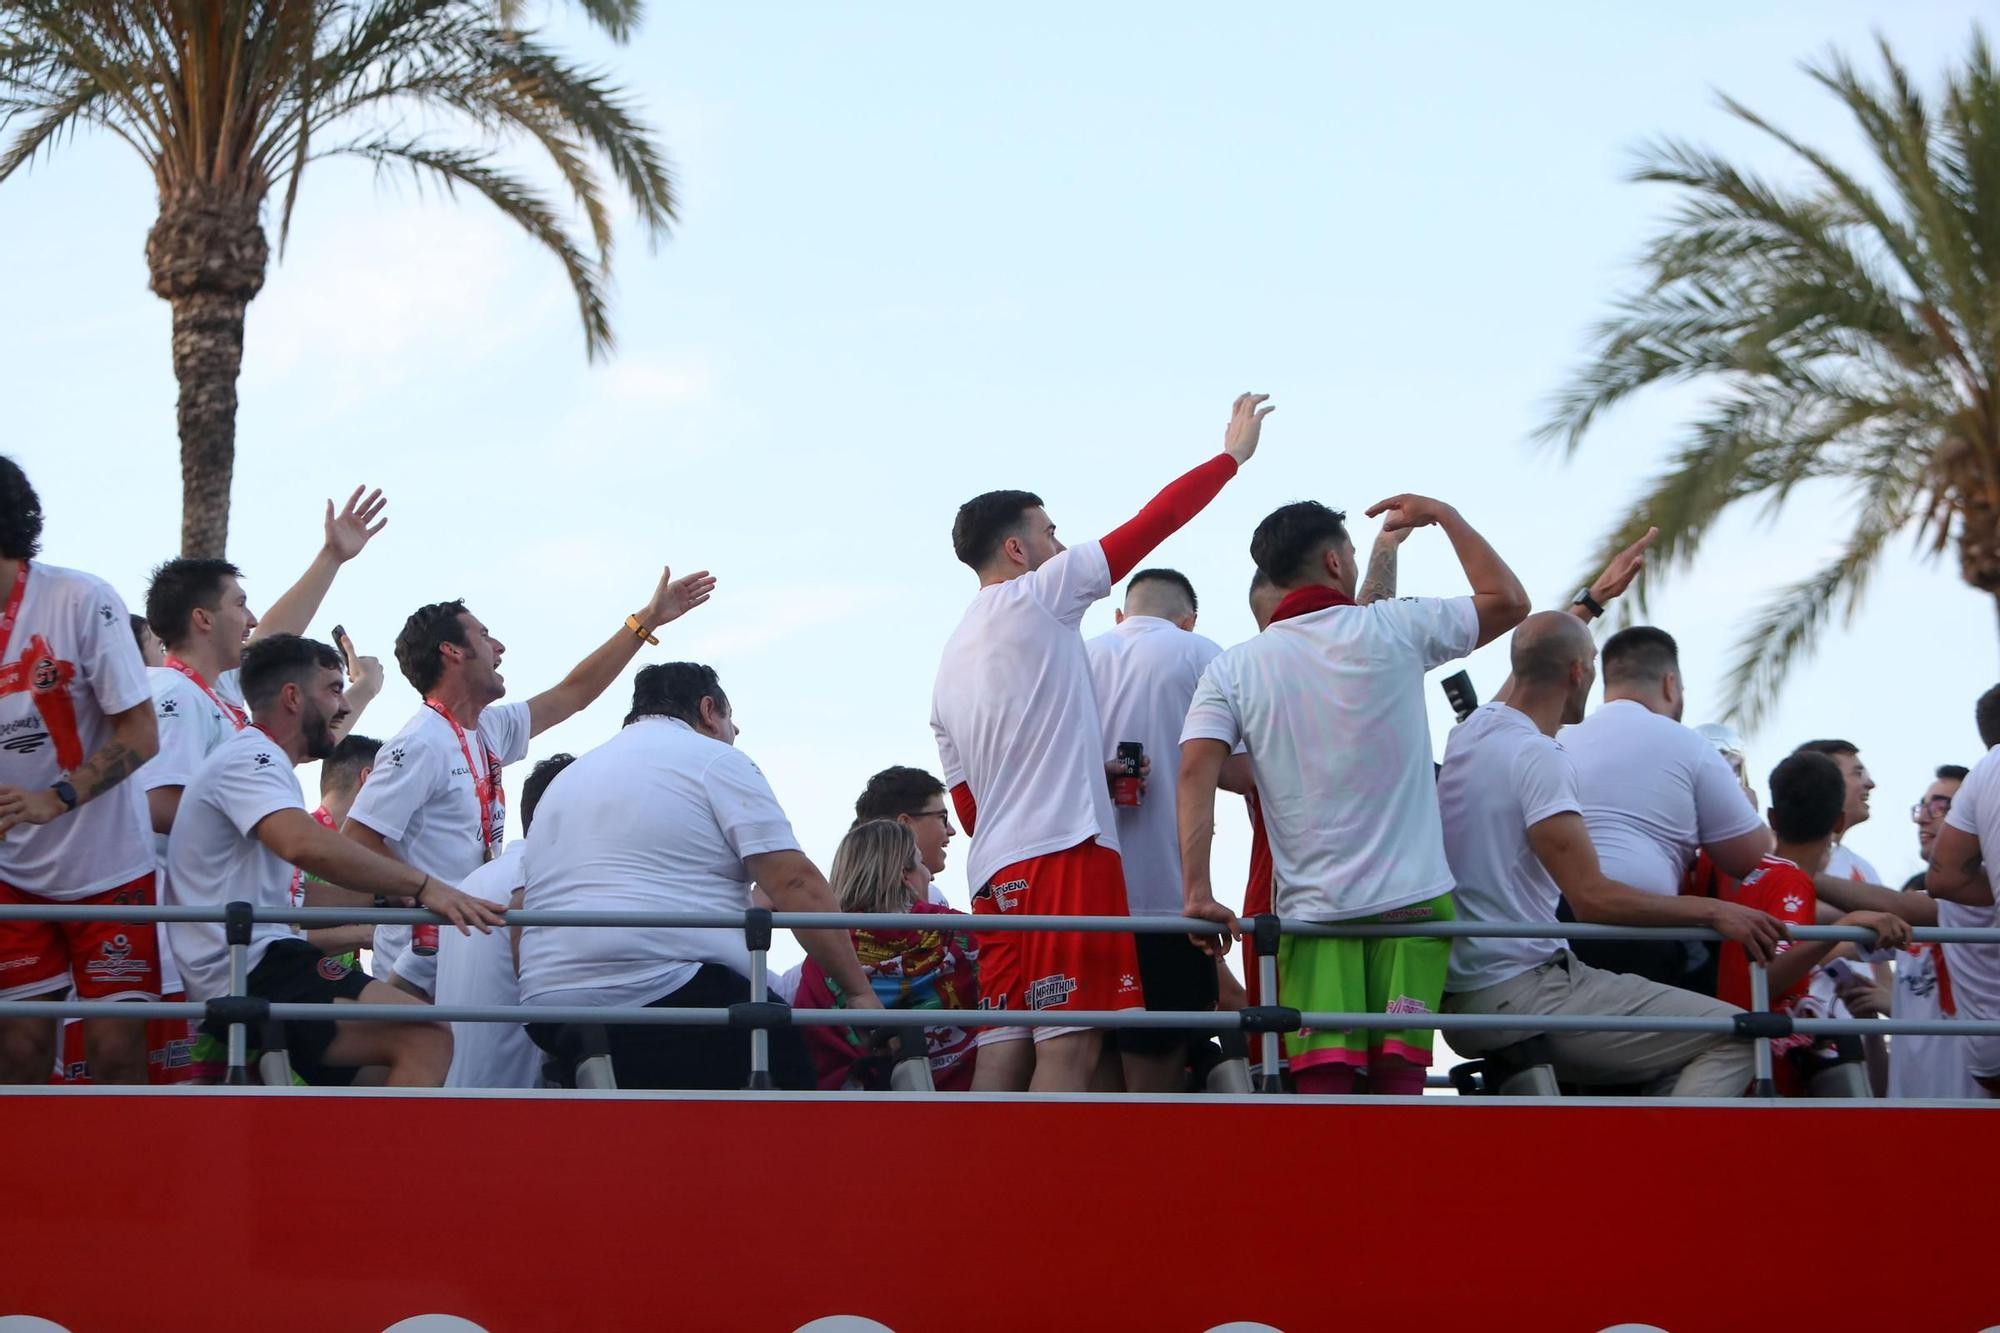 Jimbee Cartagena aplasta a ElPozo Murcia y levanta el título por primera vez en su historia